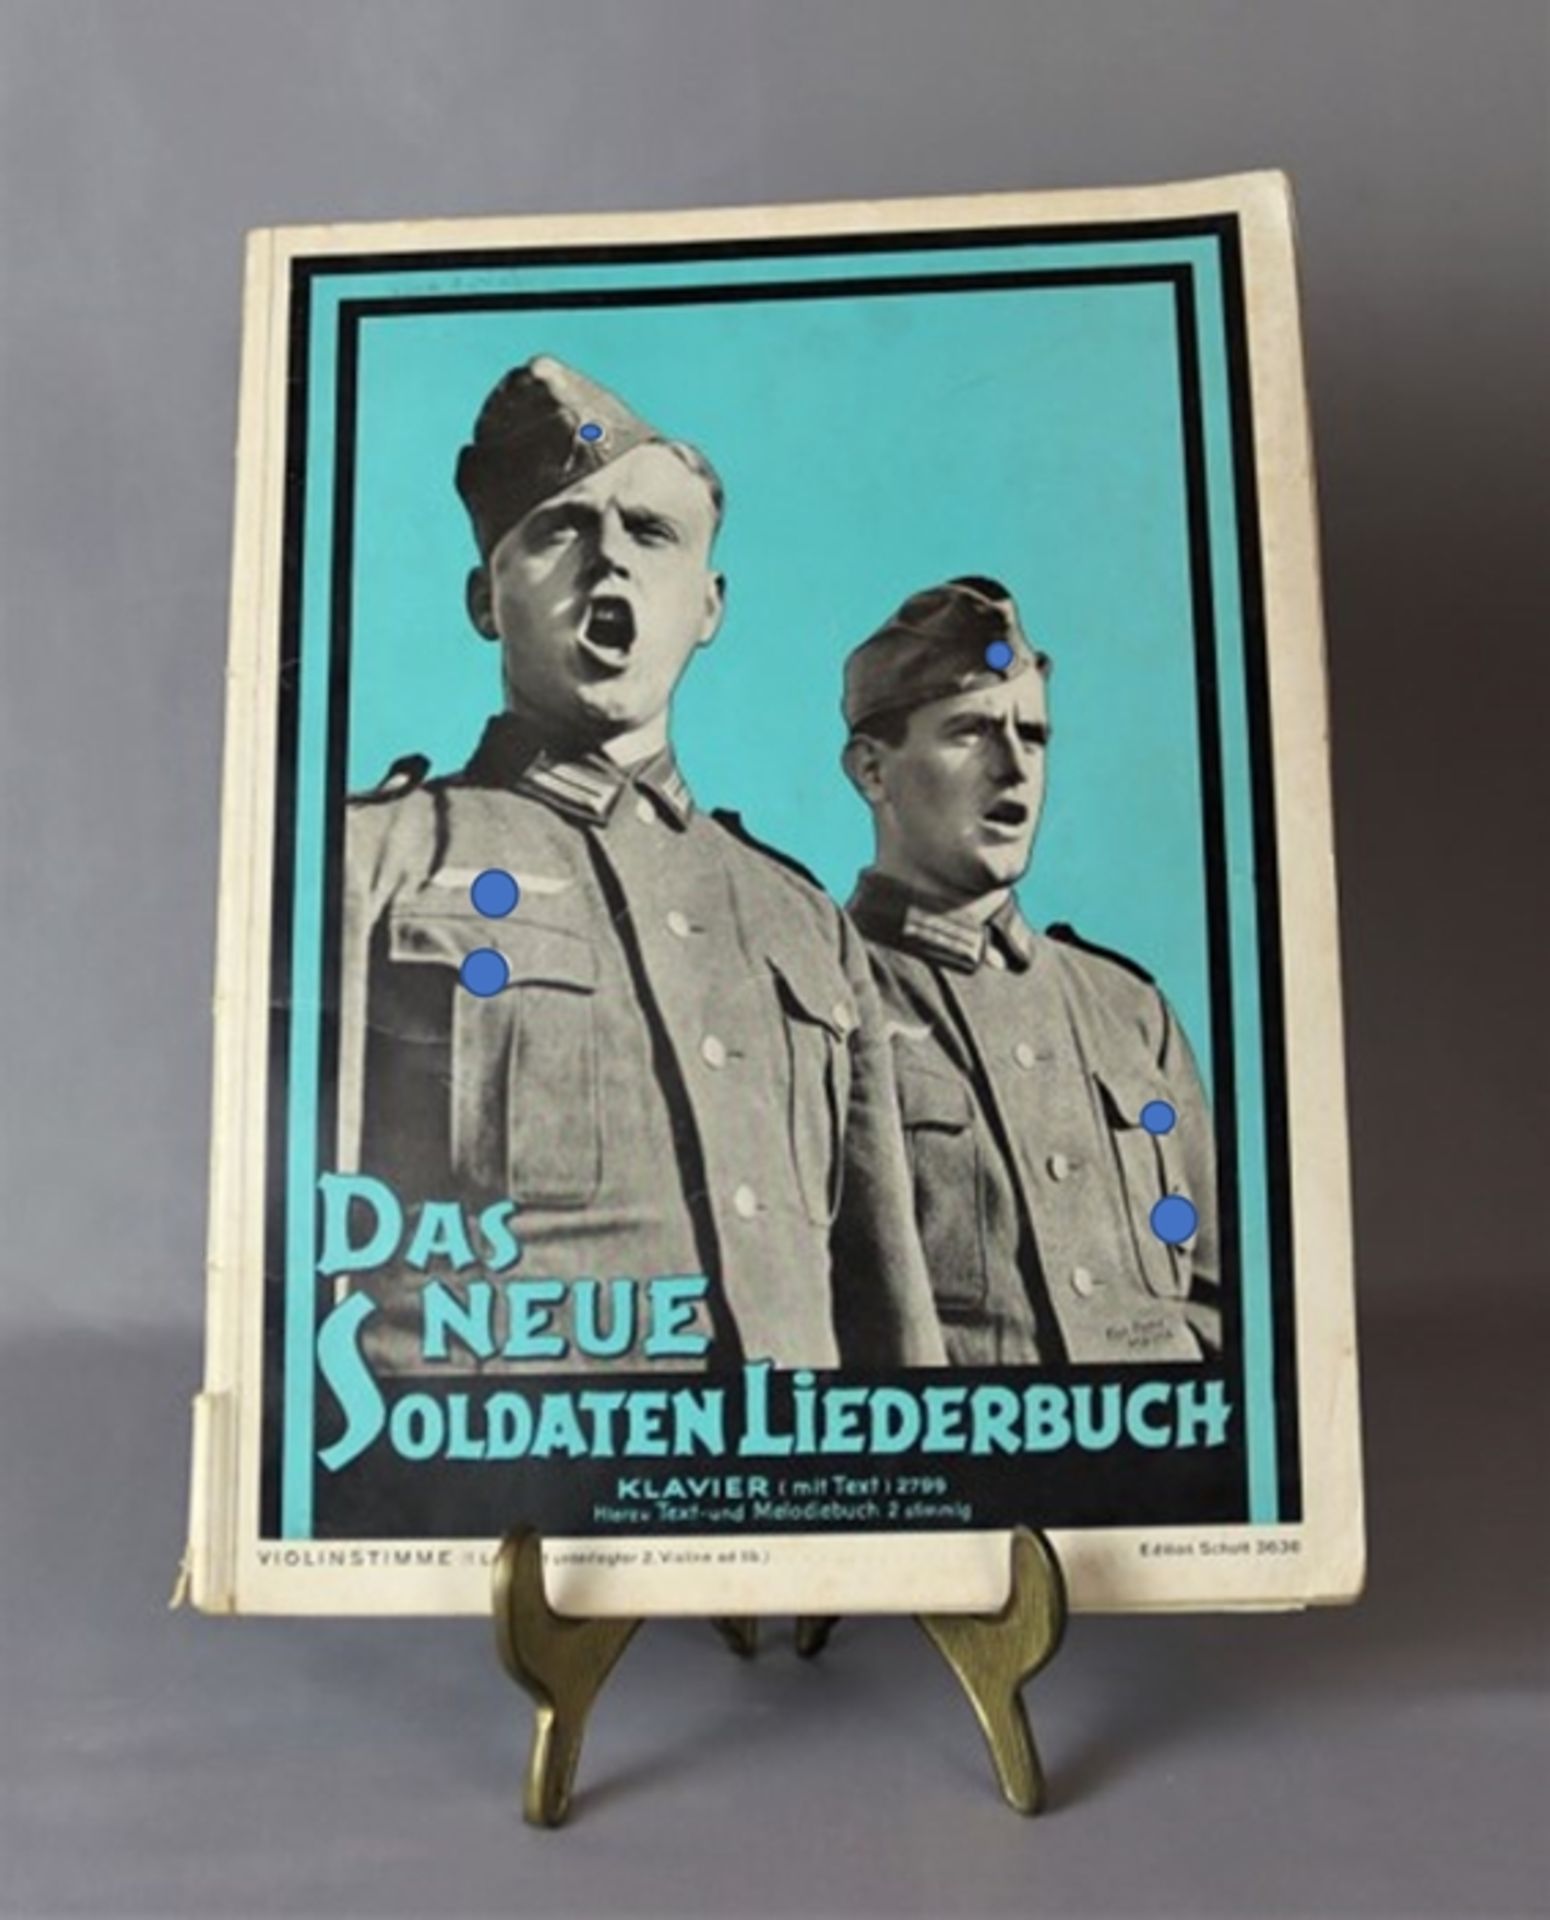 Liederbuch "Das neue Soldatenliederbuch", 3. Reich Wehrmacht